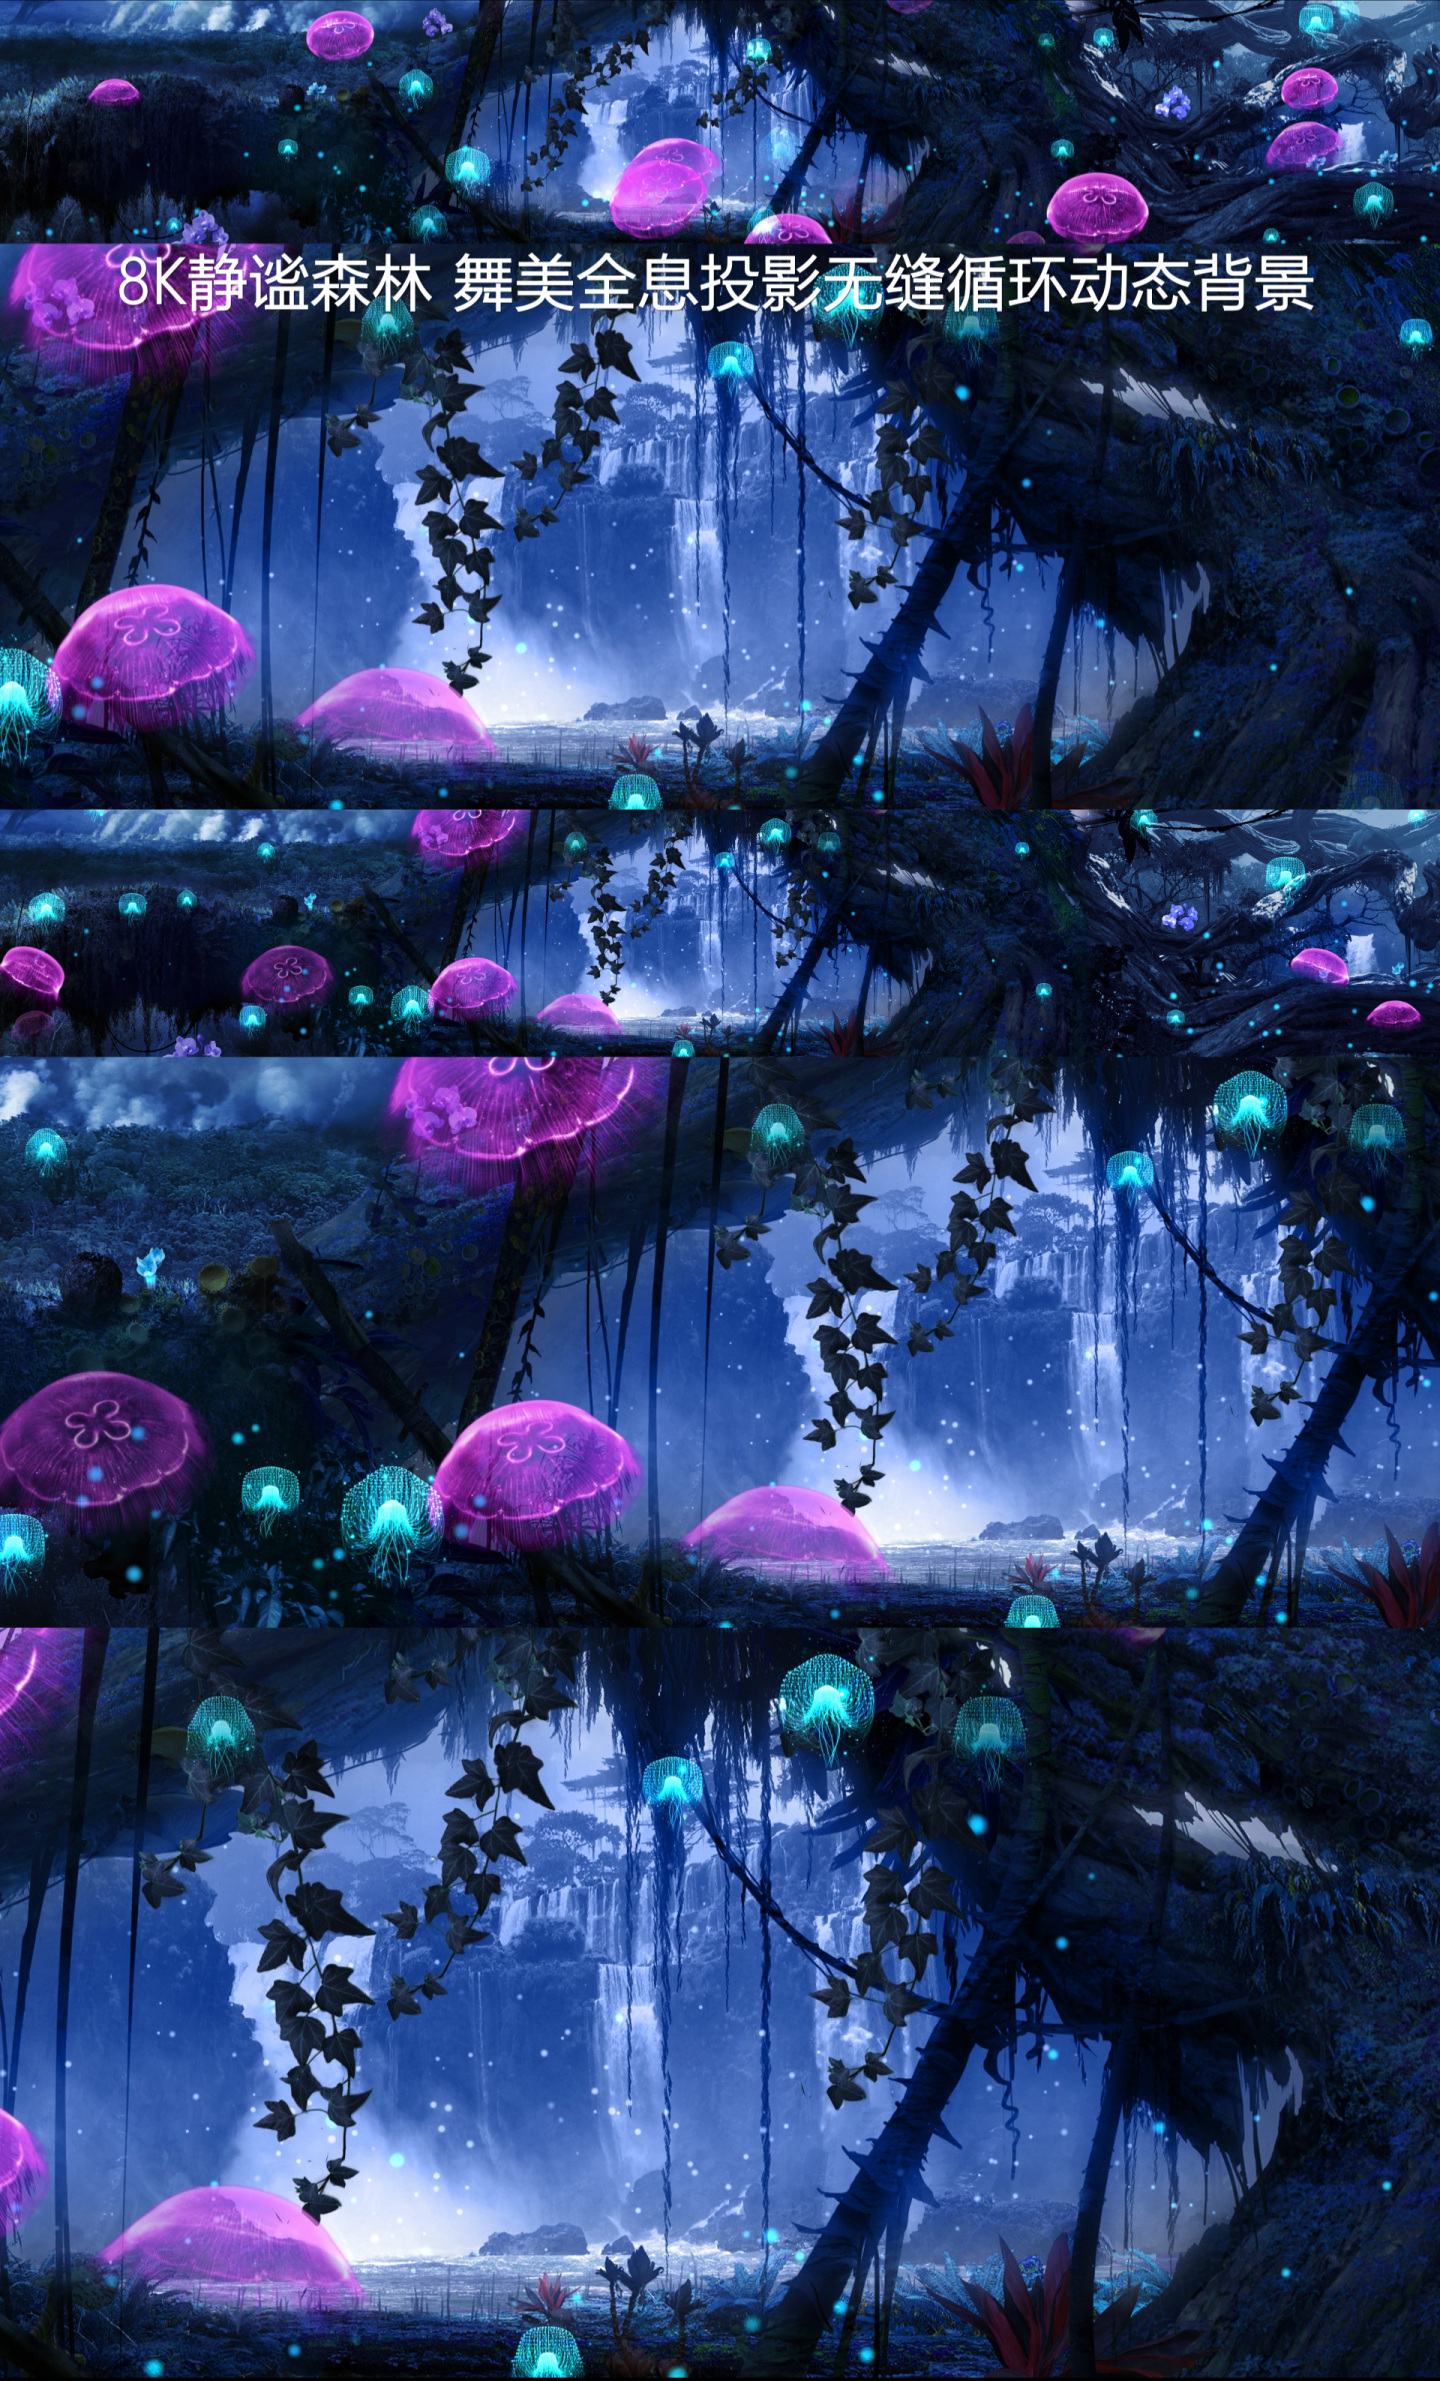 8k古藤水母精灵静谧森林投影